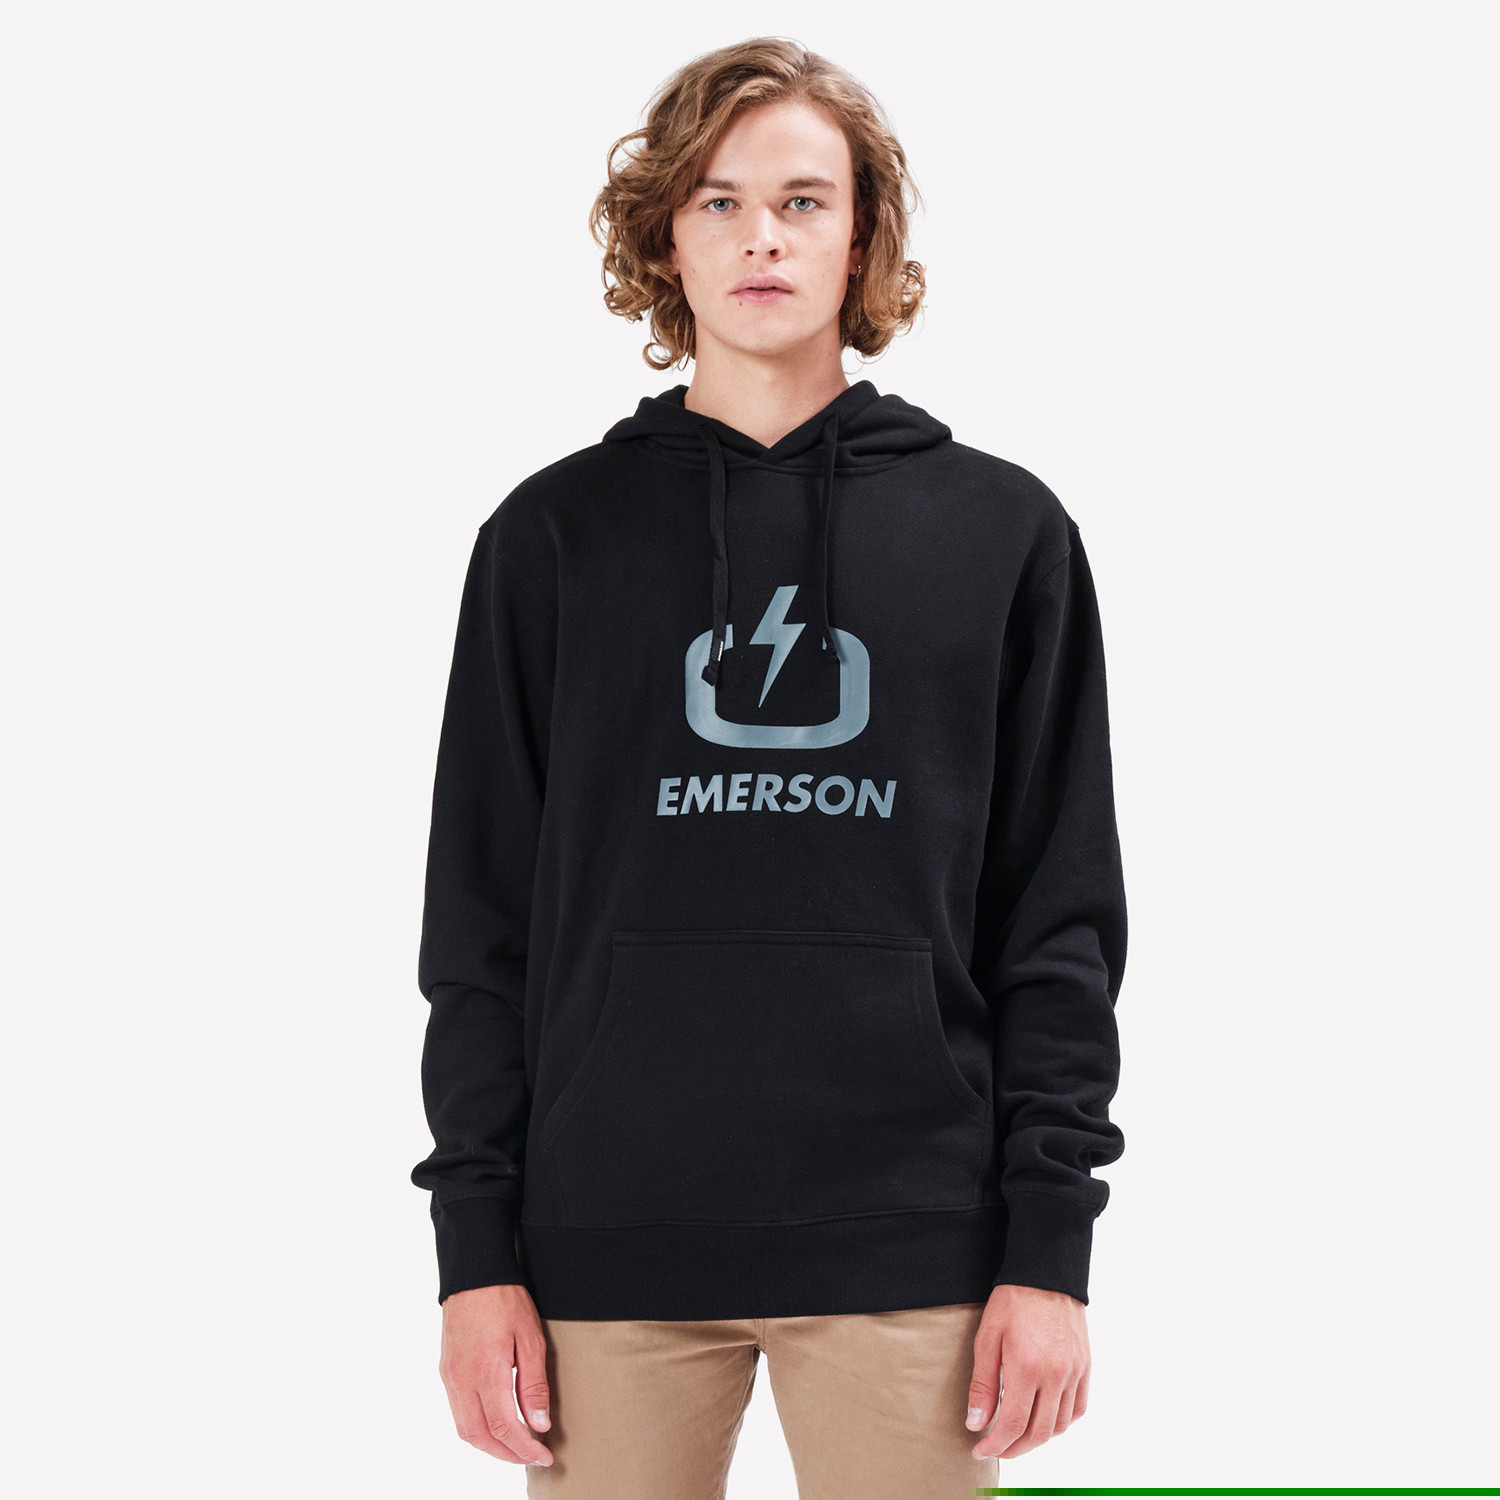 Emerson Ανδρική Μπλούζα με Κουκούλα (9000086379_1469)